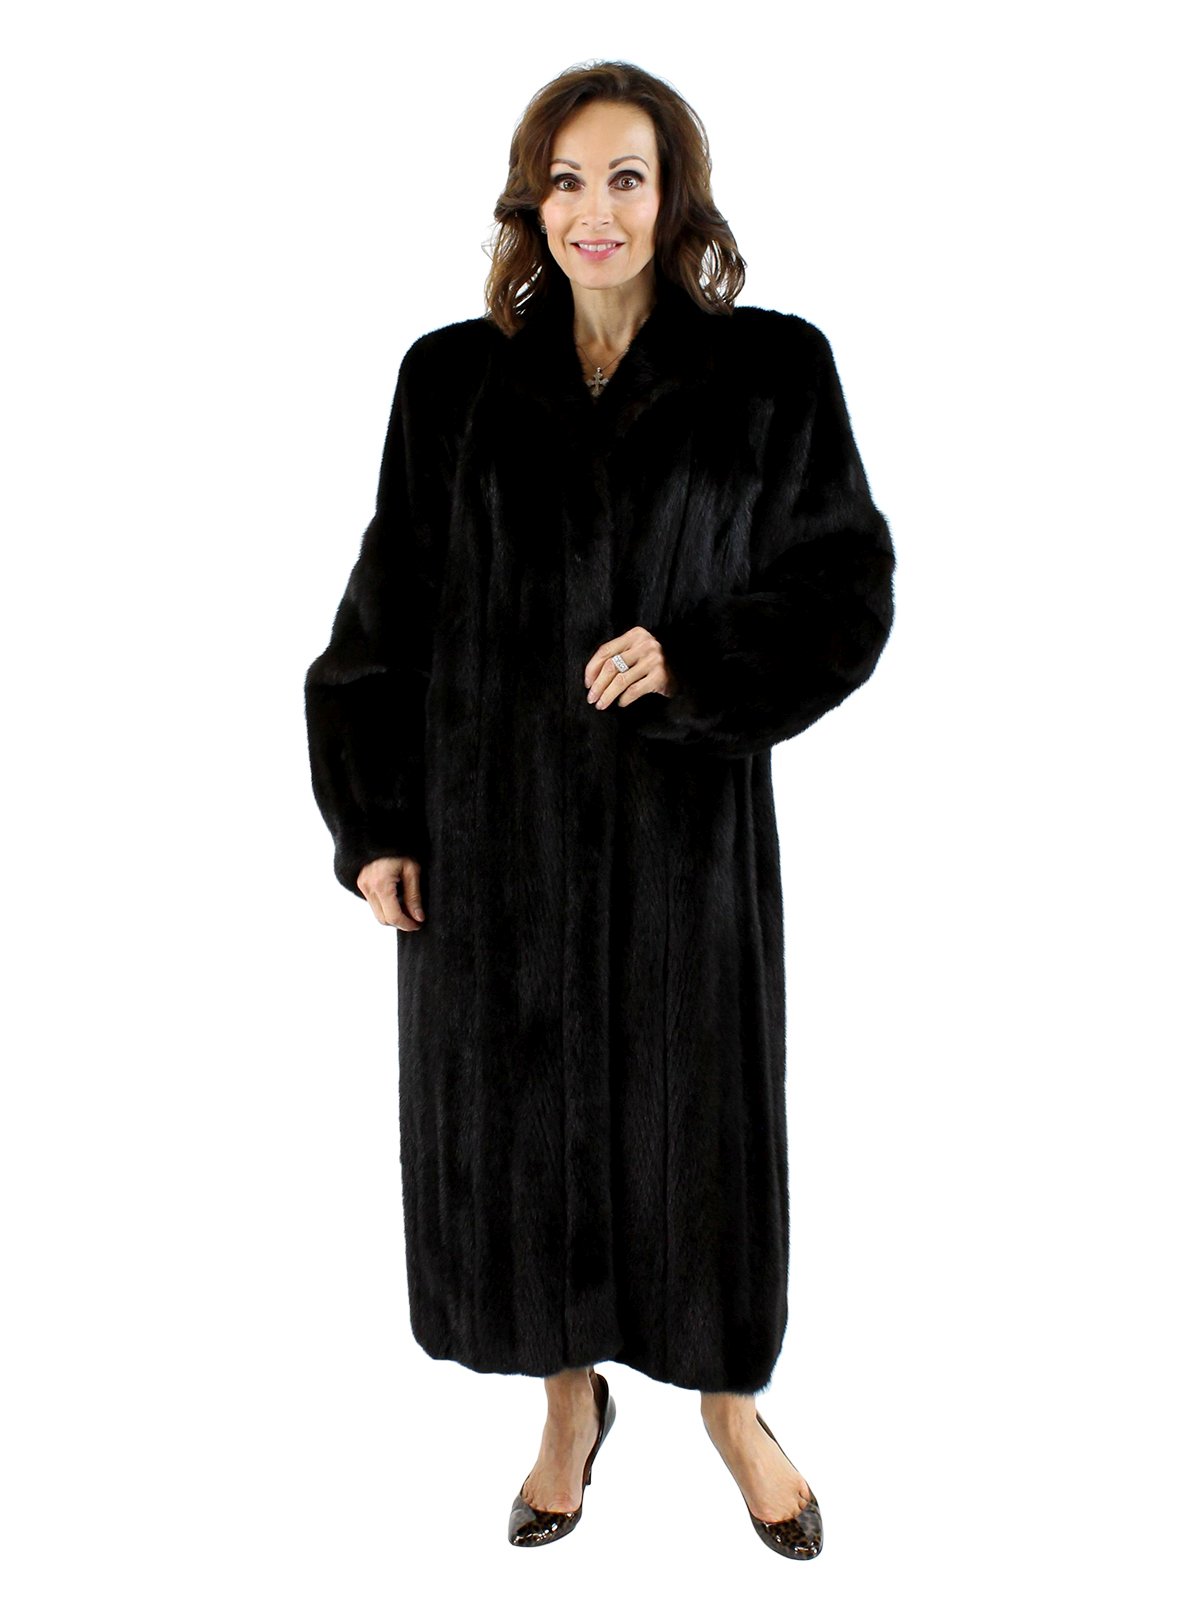 Swakara Russian Lamb Fur Coat - Womens Medium - Black 